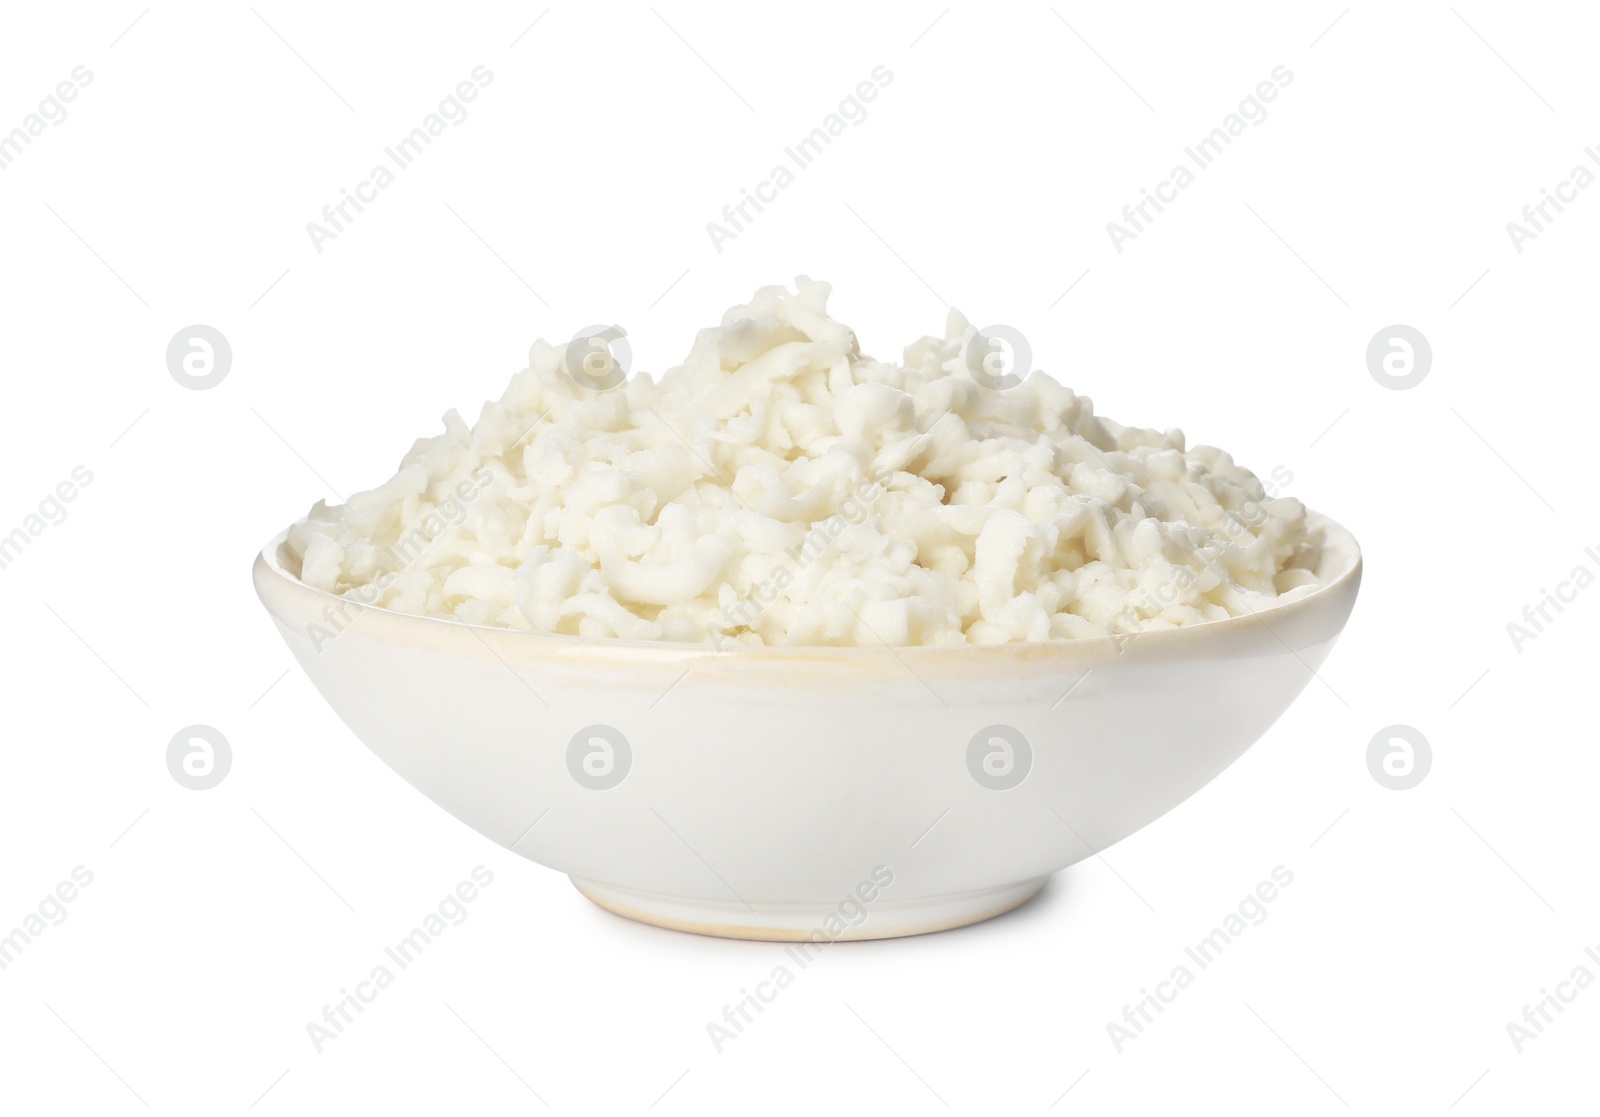 Photo of Bowl with delicious mozzarella cheese on white background